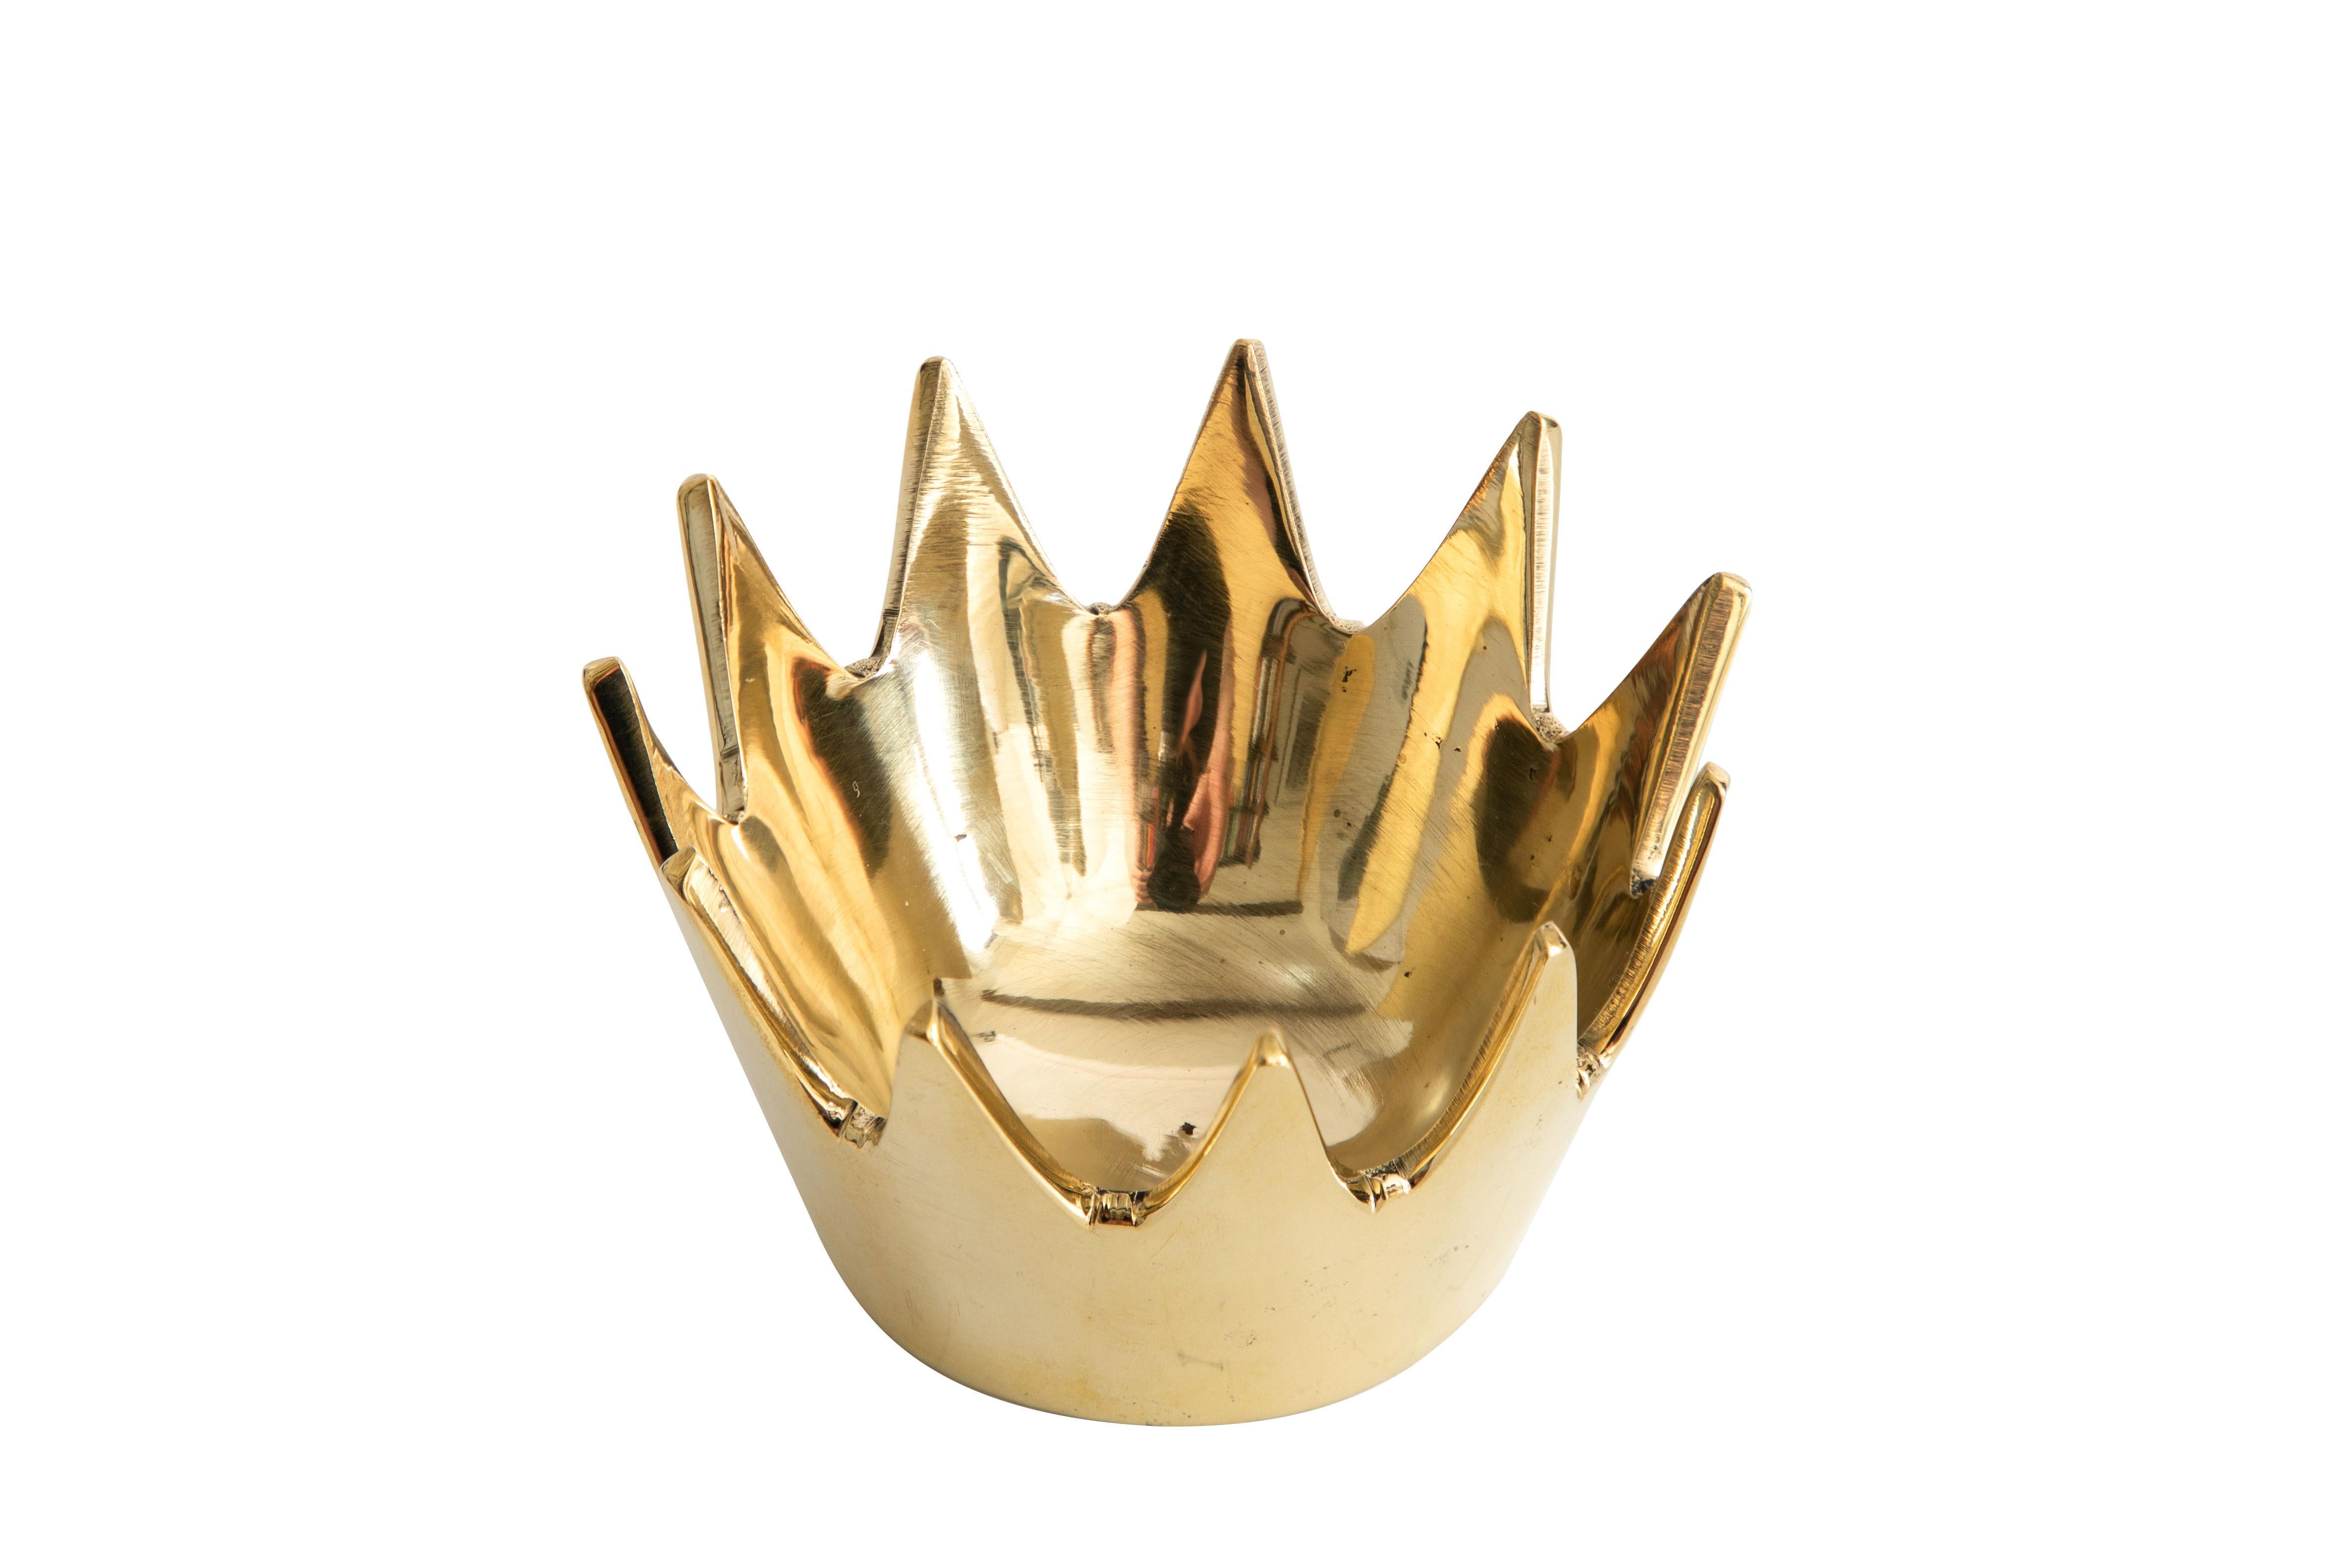 Carl Auböck Modell #3600 'Crown' Messingschale. Diese unglaublich raffinierte und skulpturale Wiener Schale wurde in den 1950er Jahren entworfen und ist aus poliertem Messing gefertigt. Dieses dekorative Gefäß, welches urspünglich als Aschenbecher